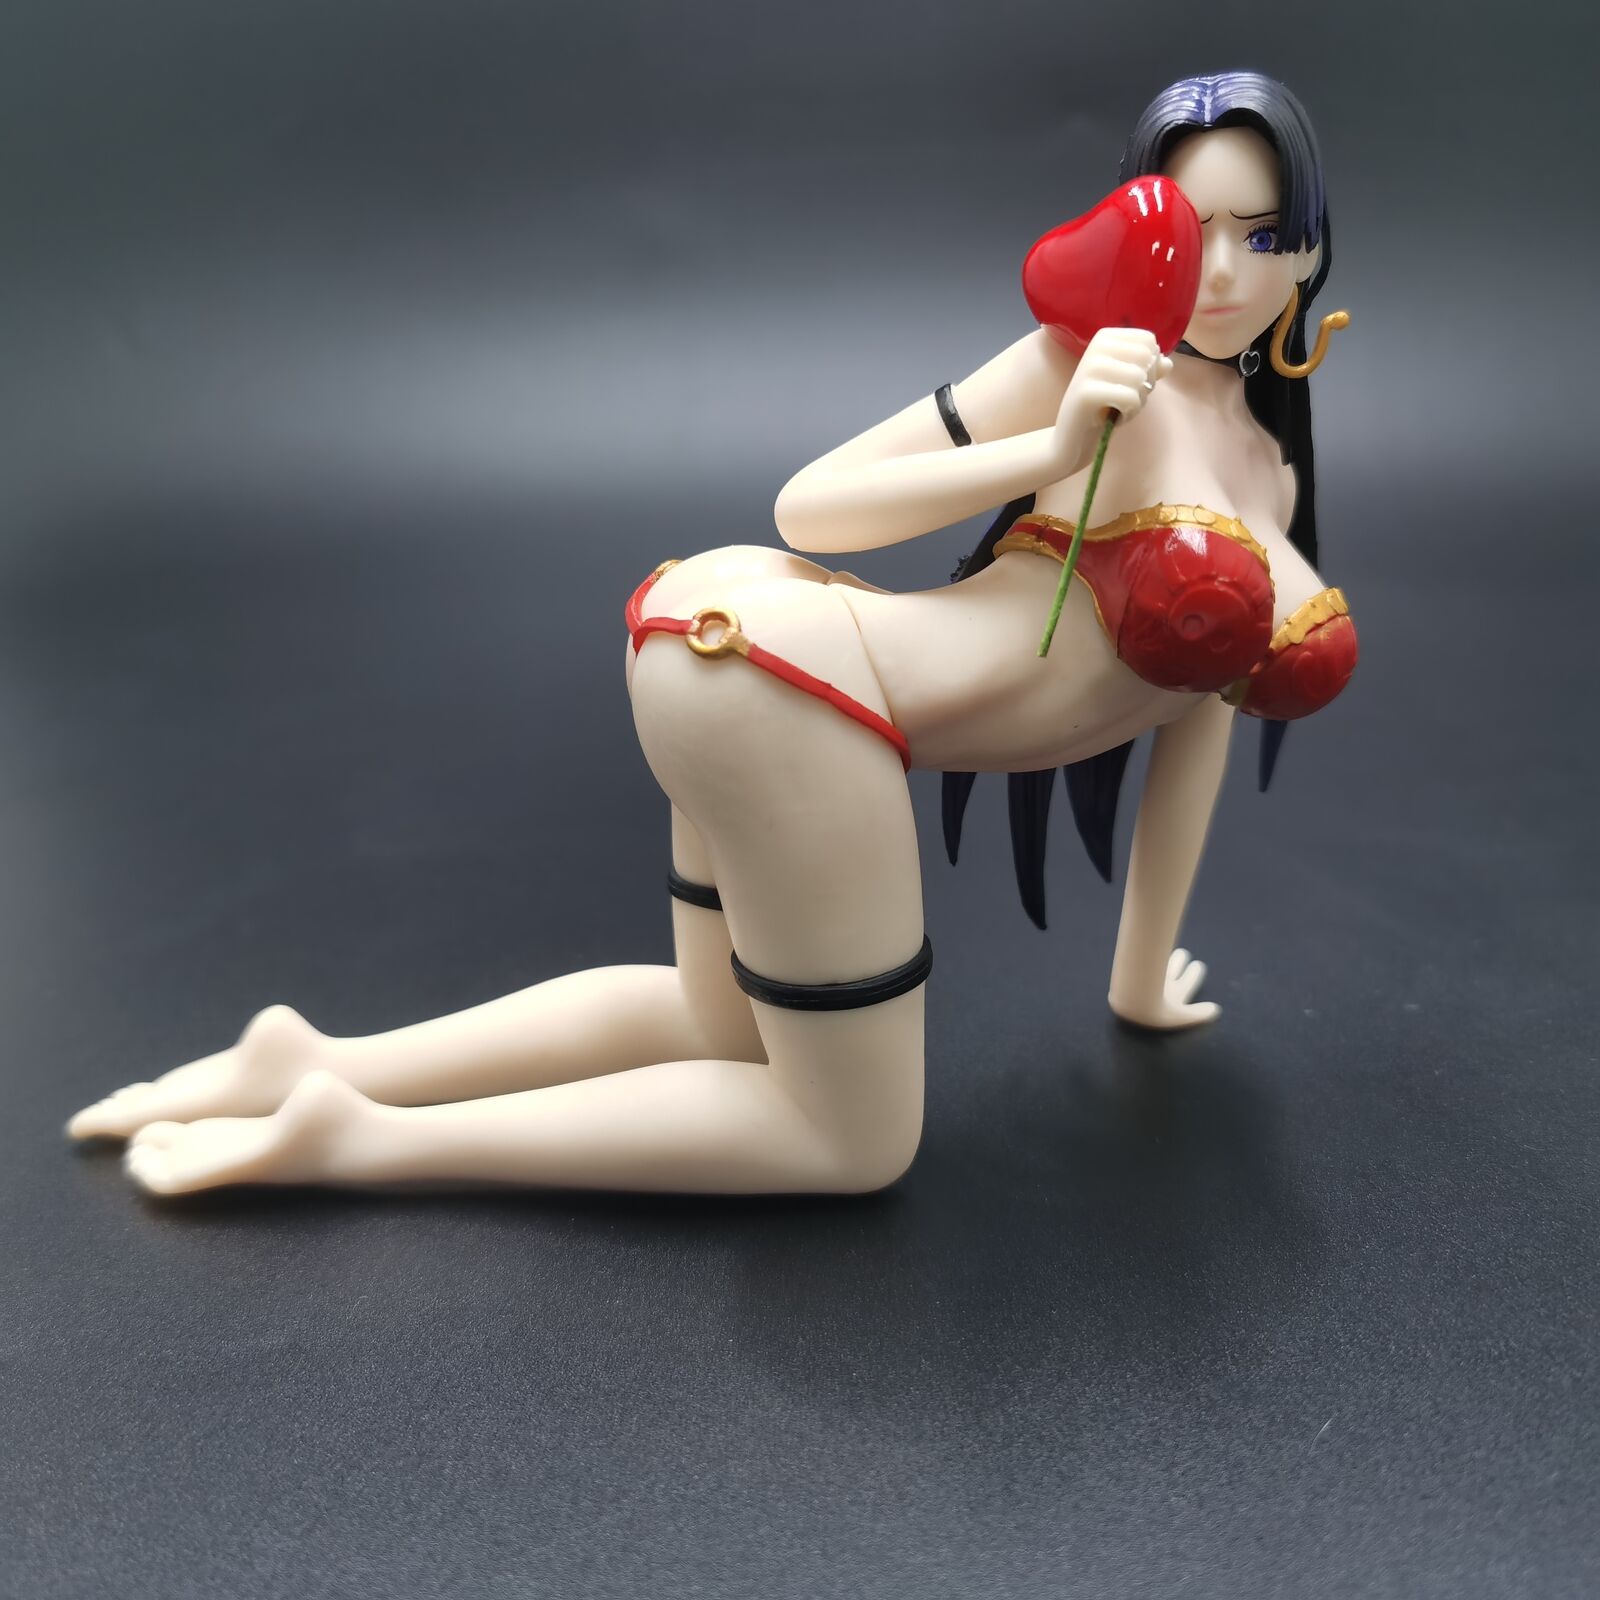 Anime Hentai Cute Sexy Girl PVC Action Figure Collectible One Piece Boa Hancock